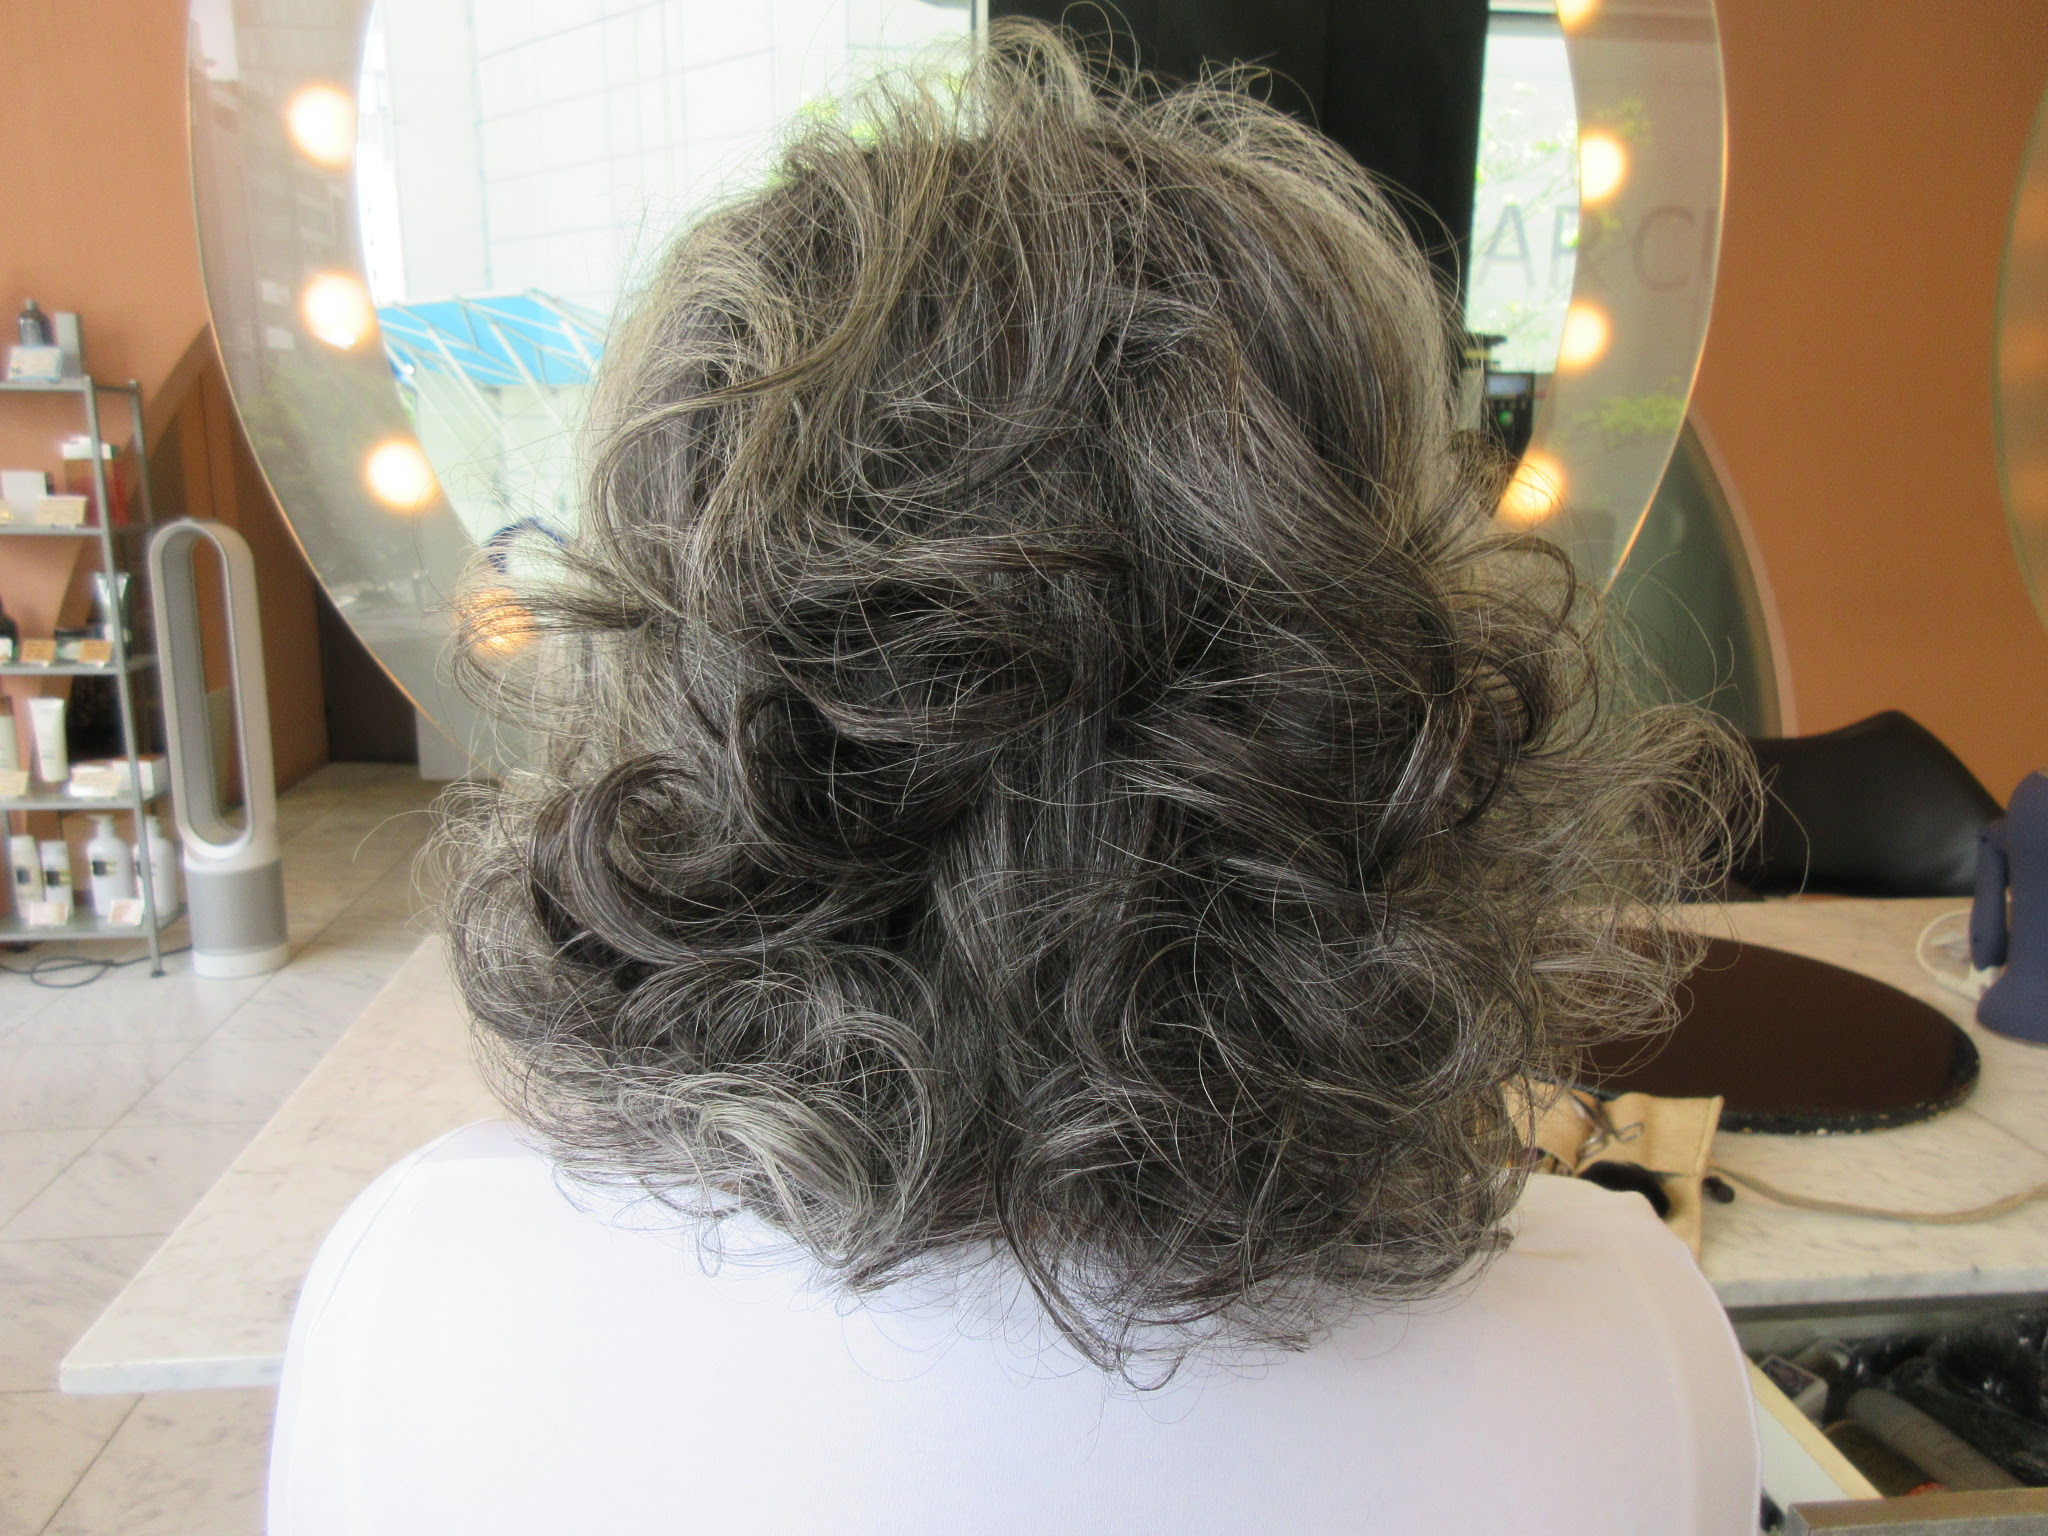 ラブリーロング 60 代 髪型 セミロング 無料のヘアスタイル画像